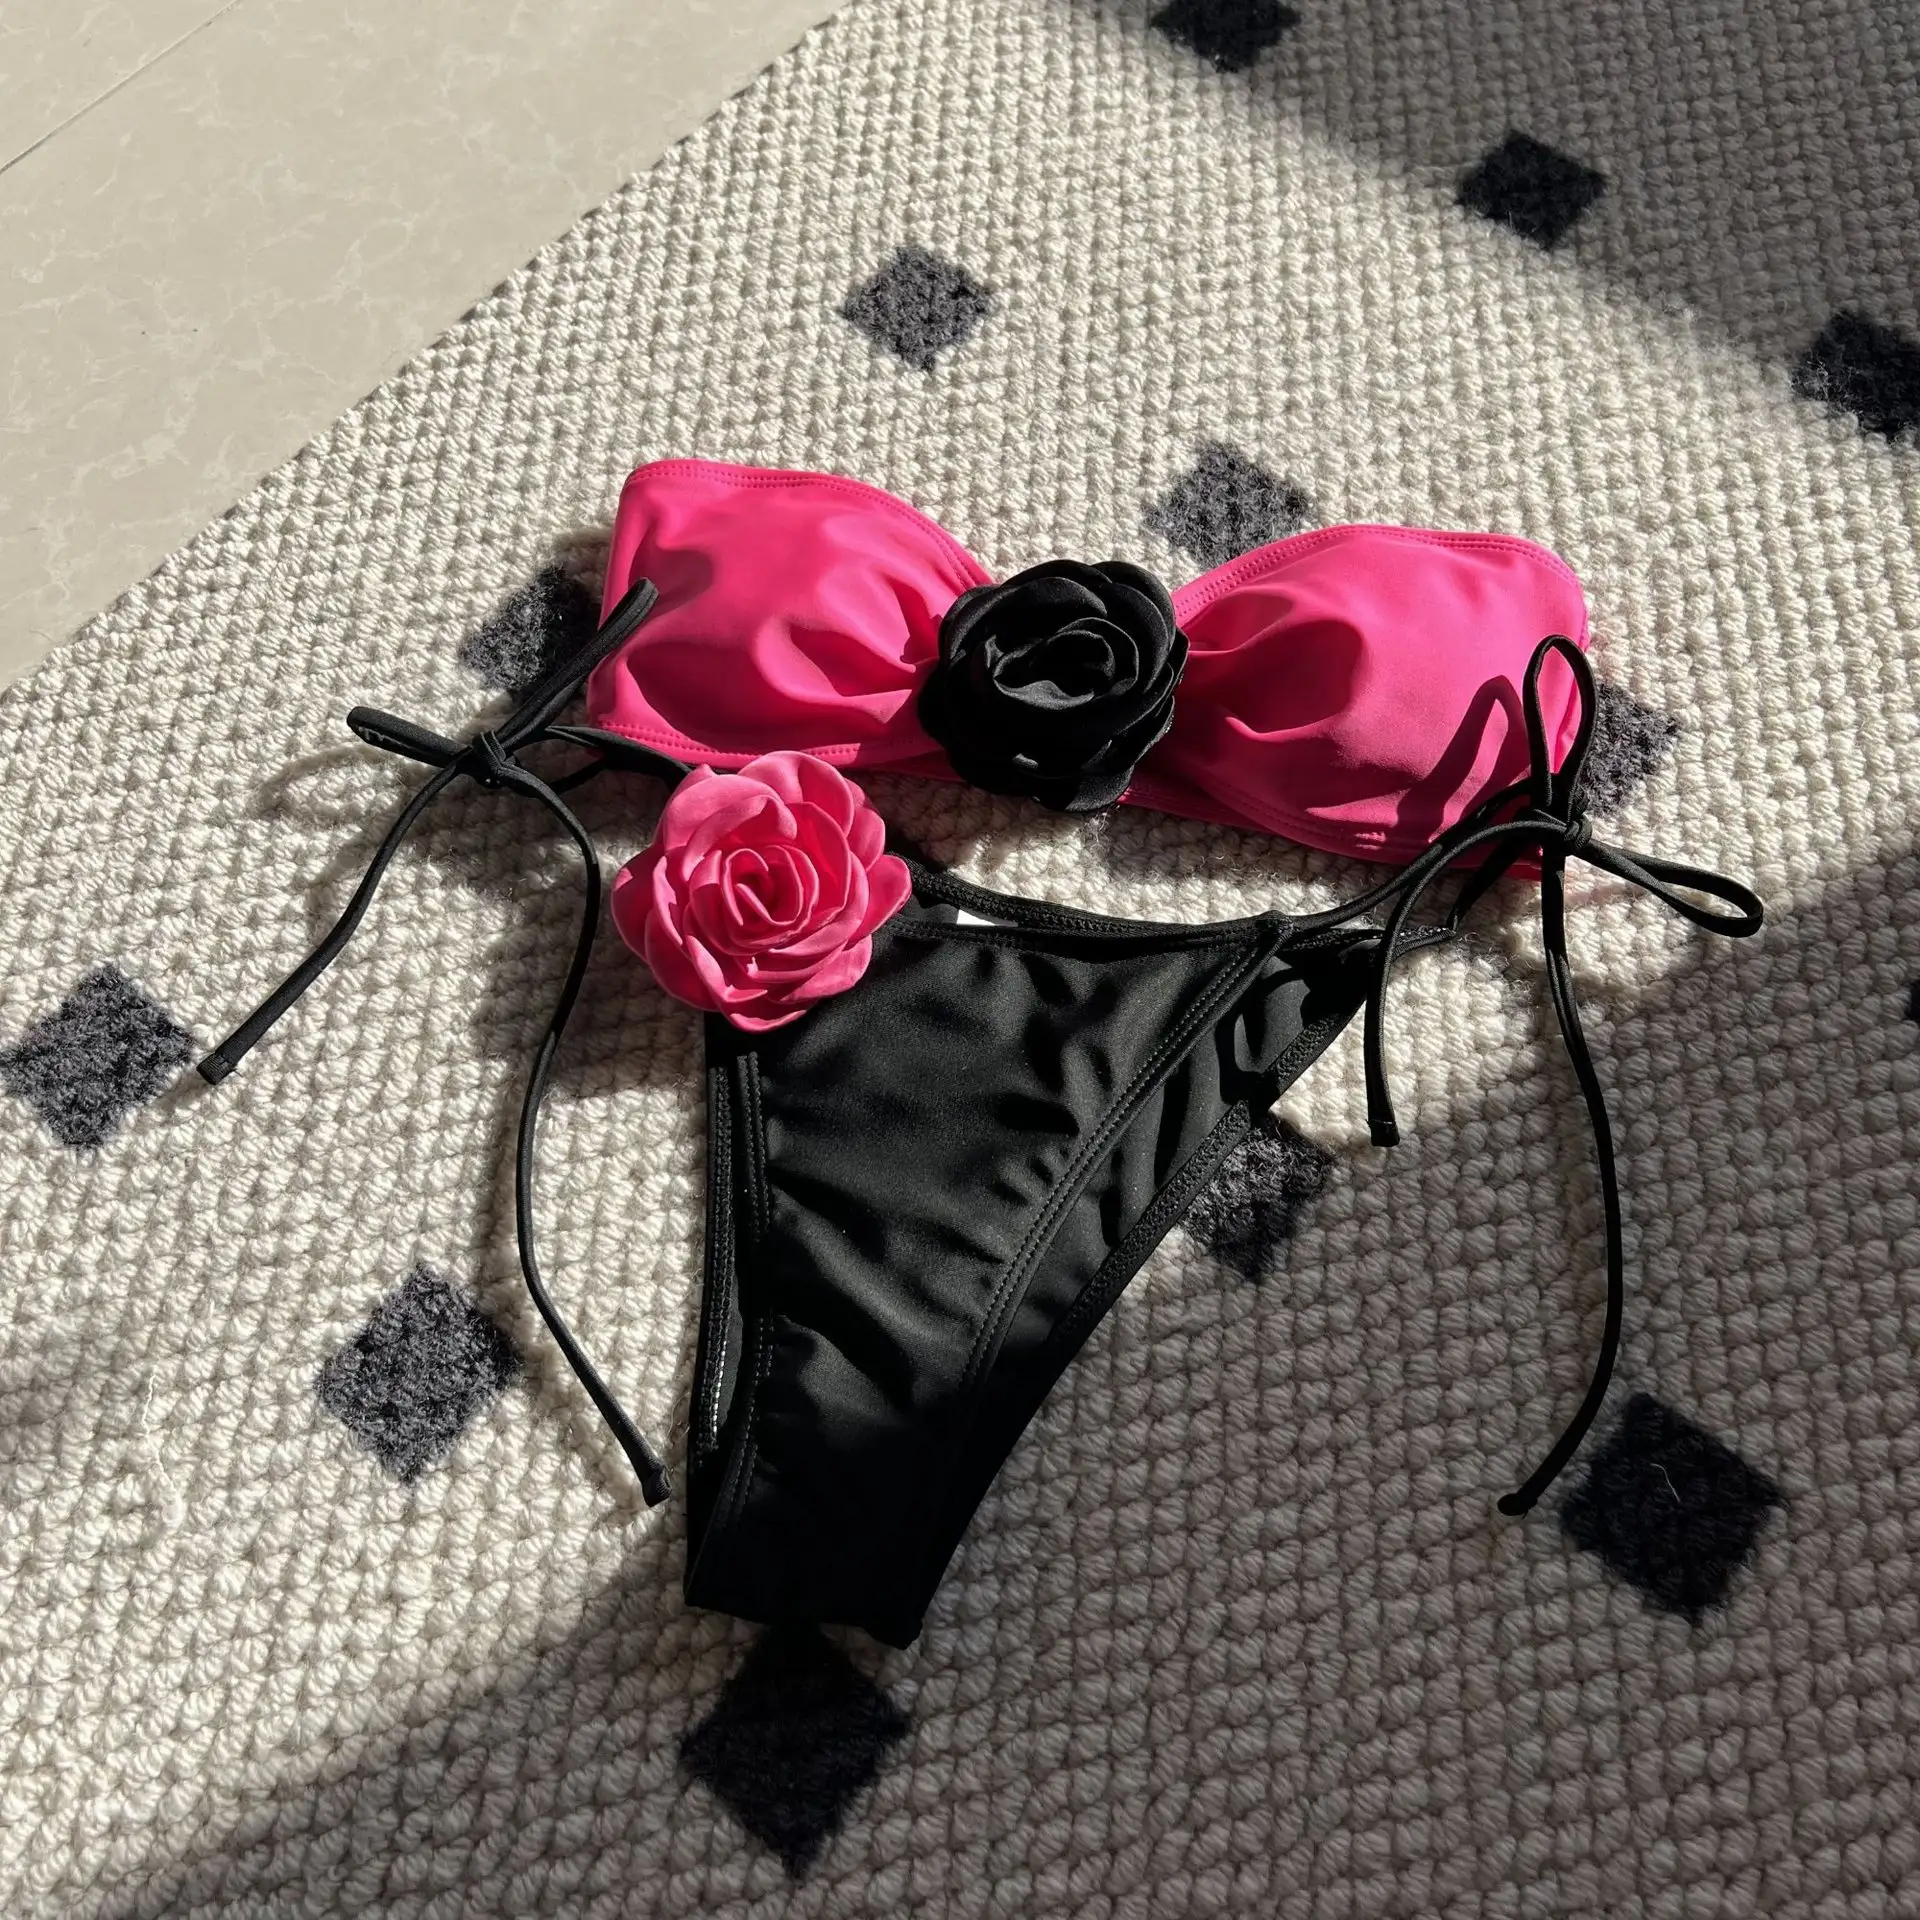 King Mcgreen Star nouveau Sexy 3D Rose fleur Bandeau sans bretelles Bikini femme maillot de bain maillots de bain 2 pièces Bikini rembourré baigneur